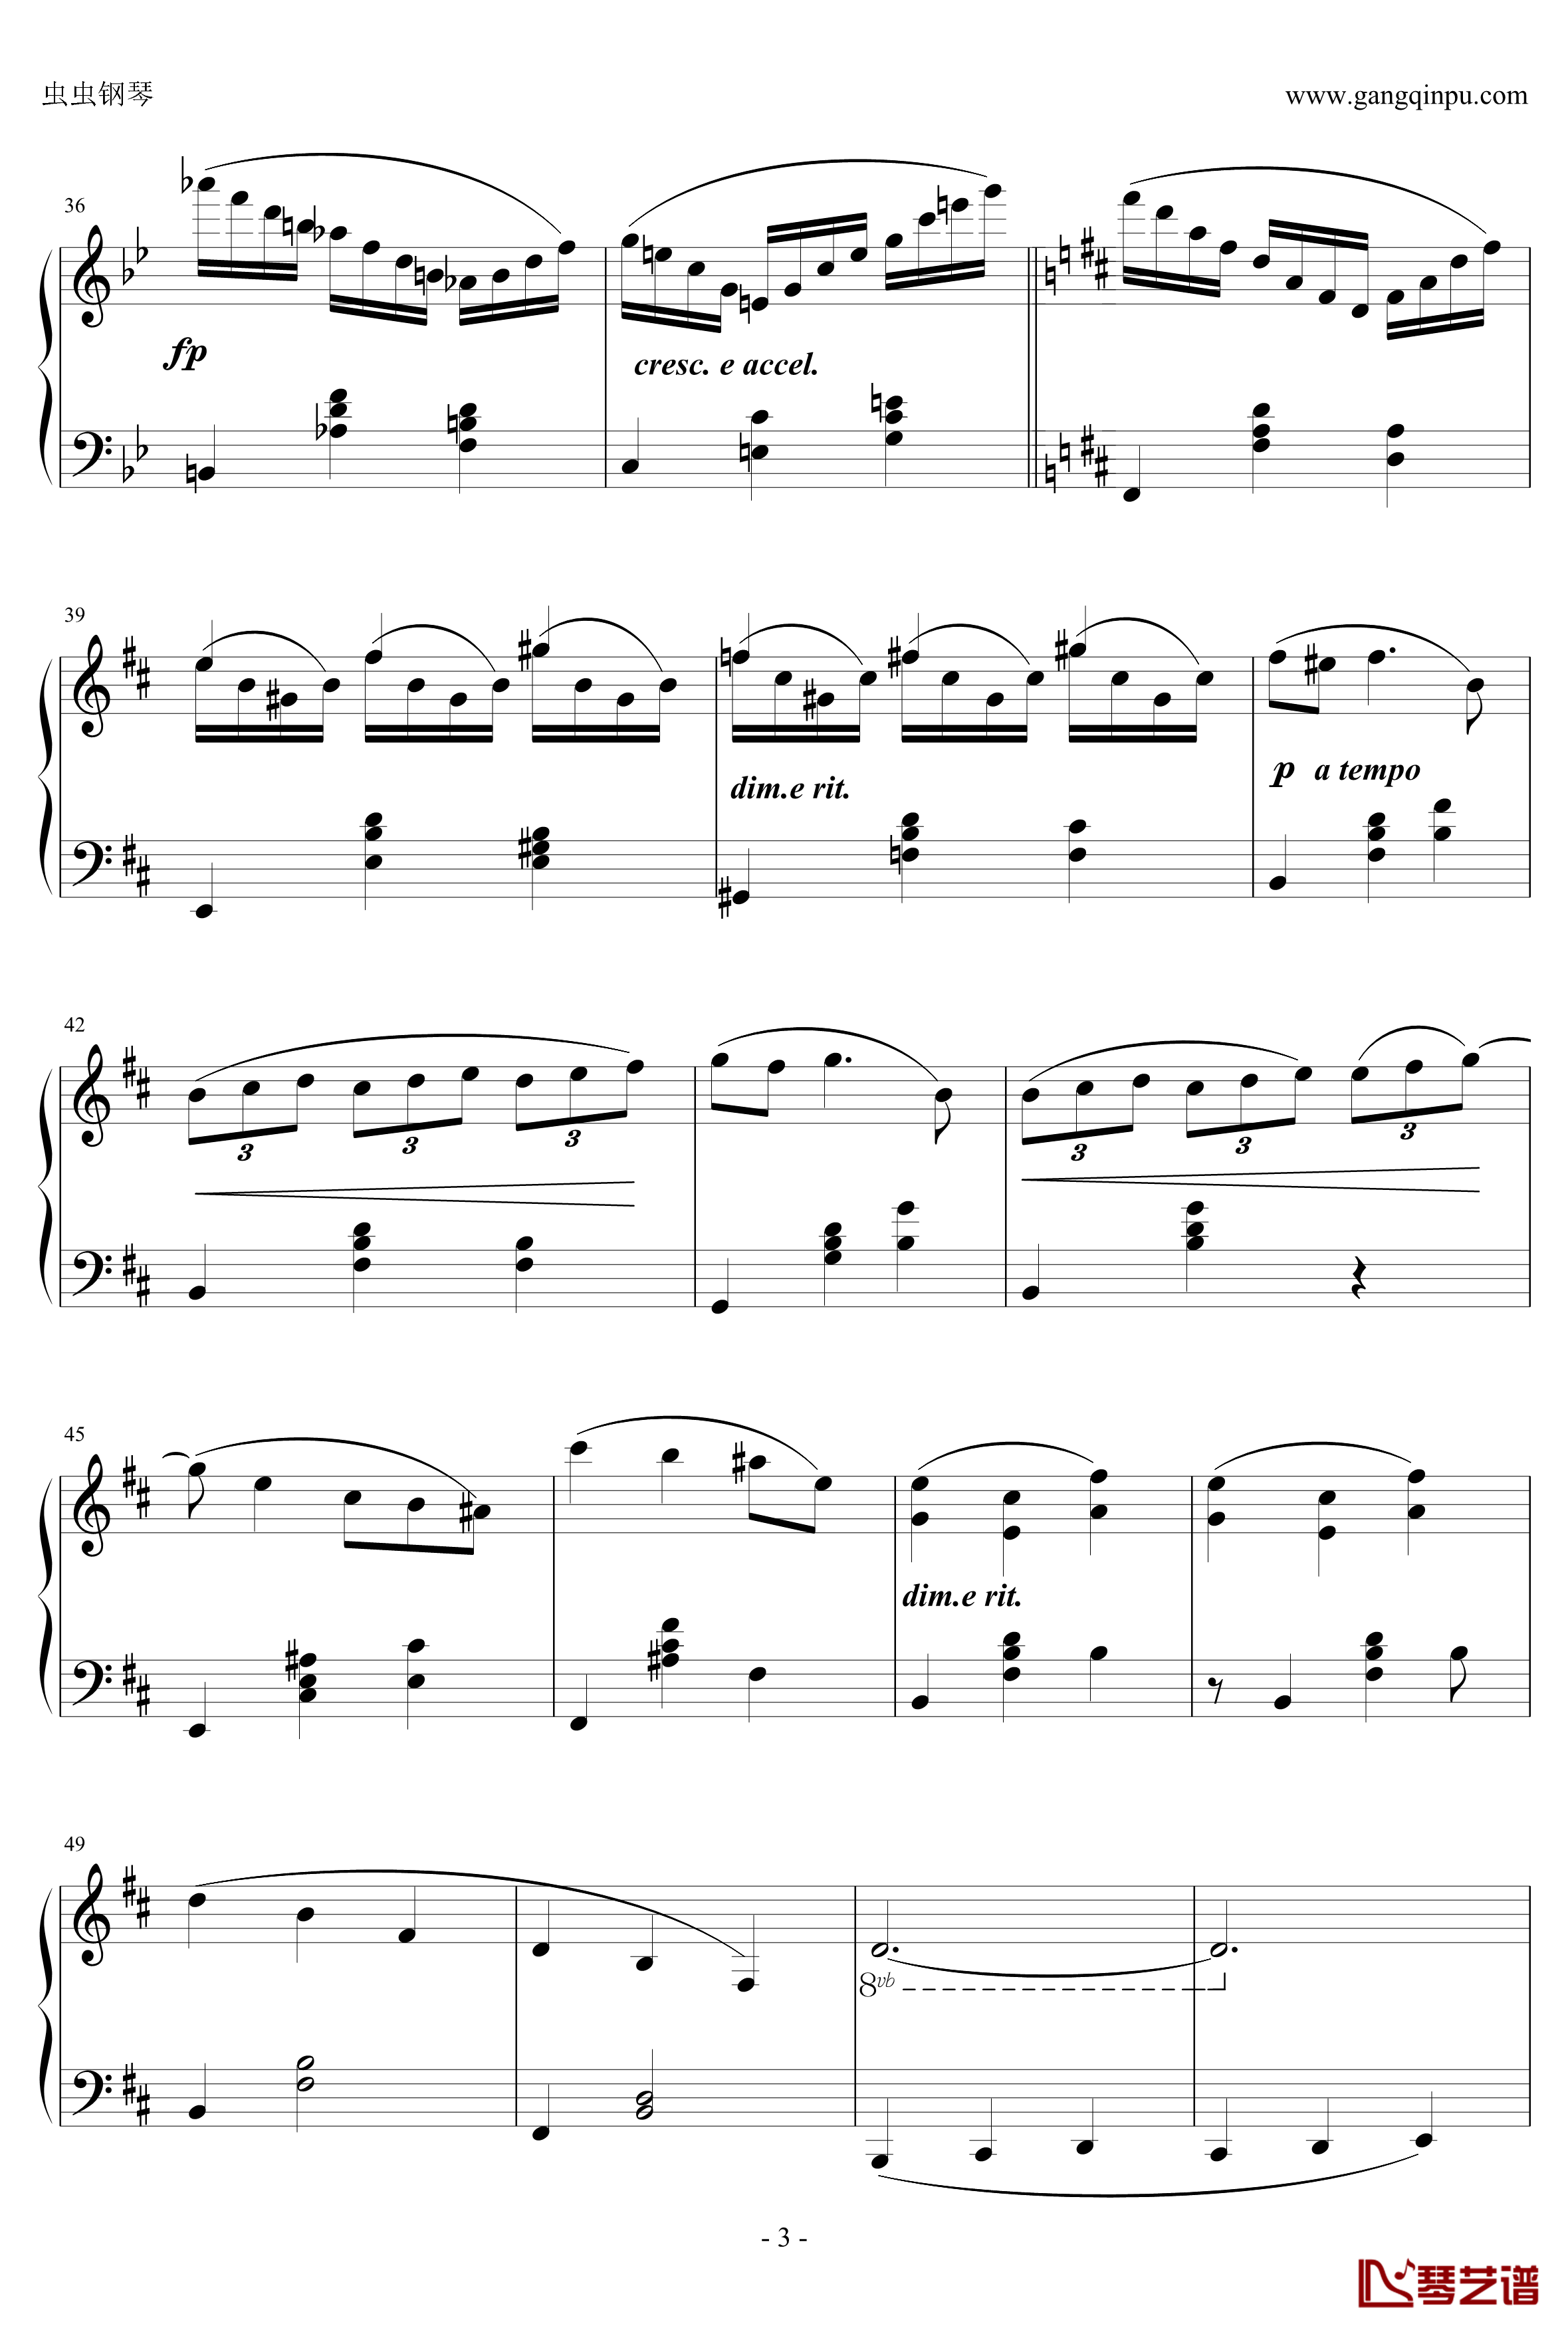 C大调小奏鸣曲钢琴谱 第三乐章-天籁传声3